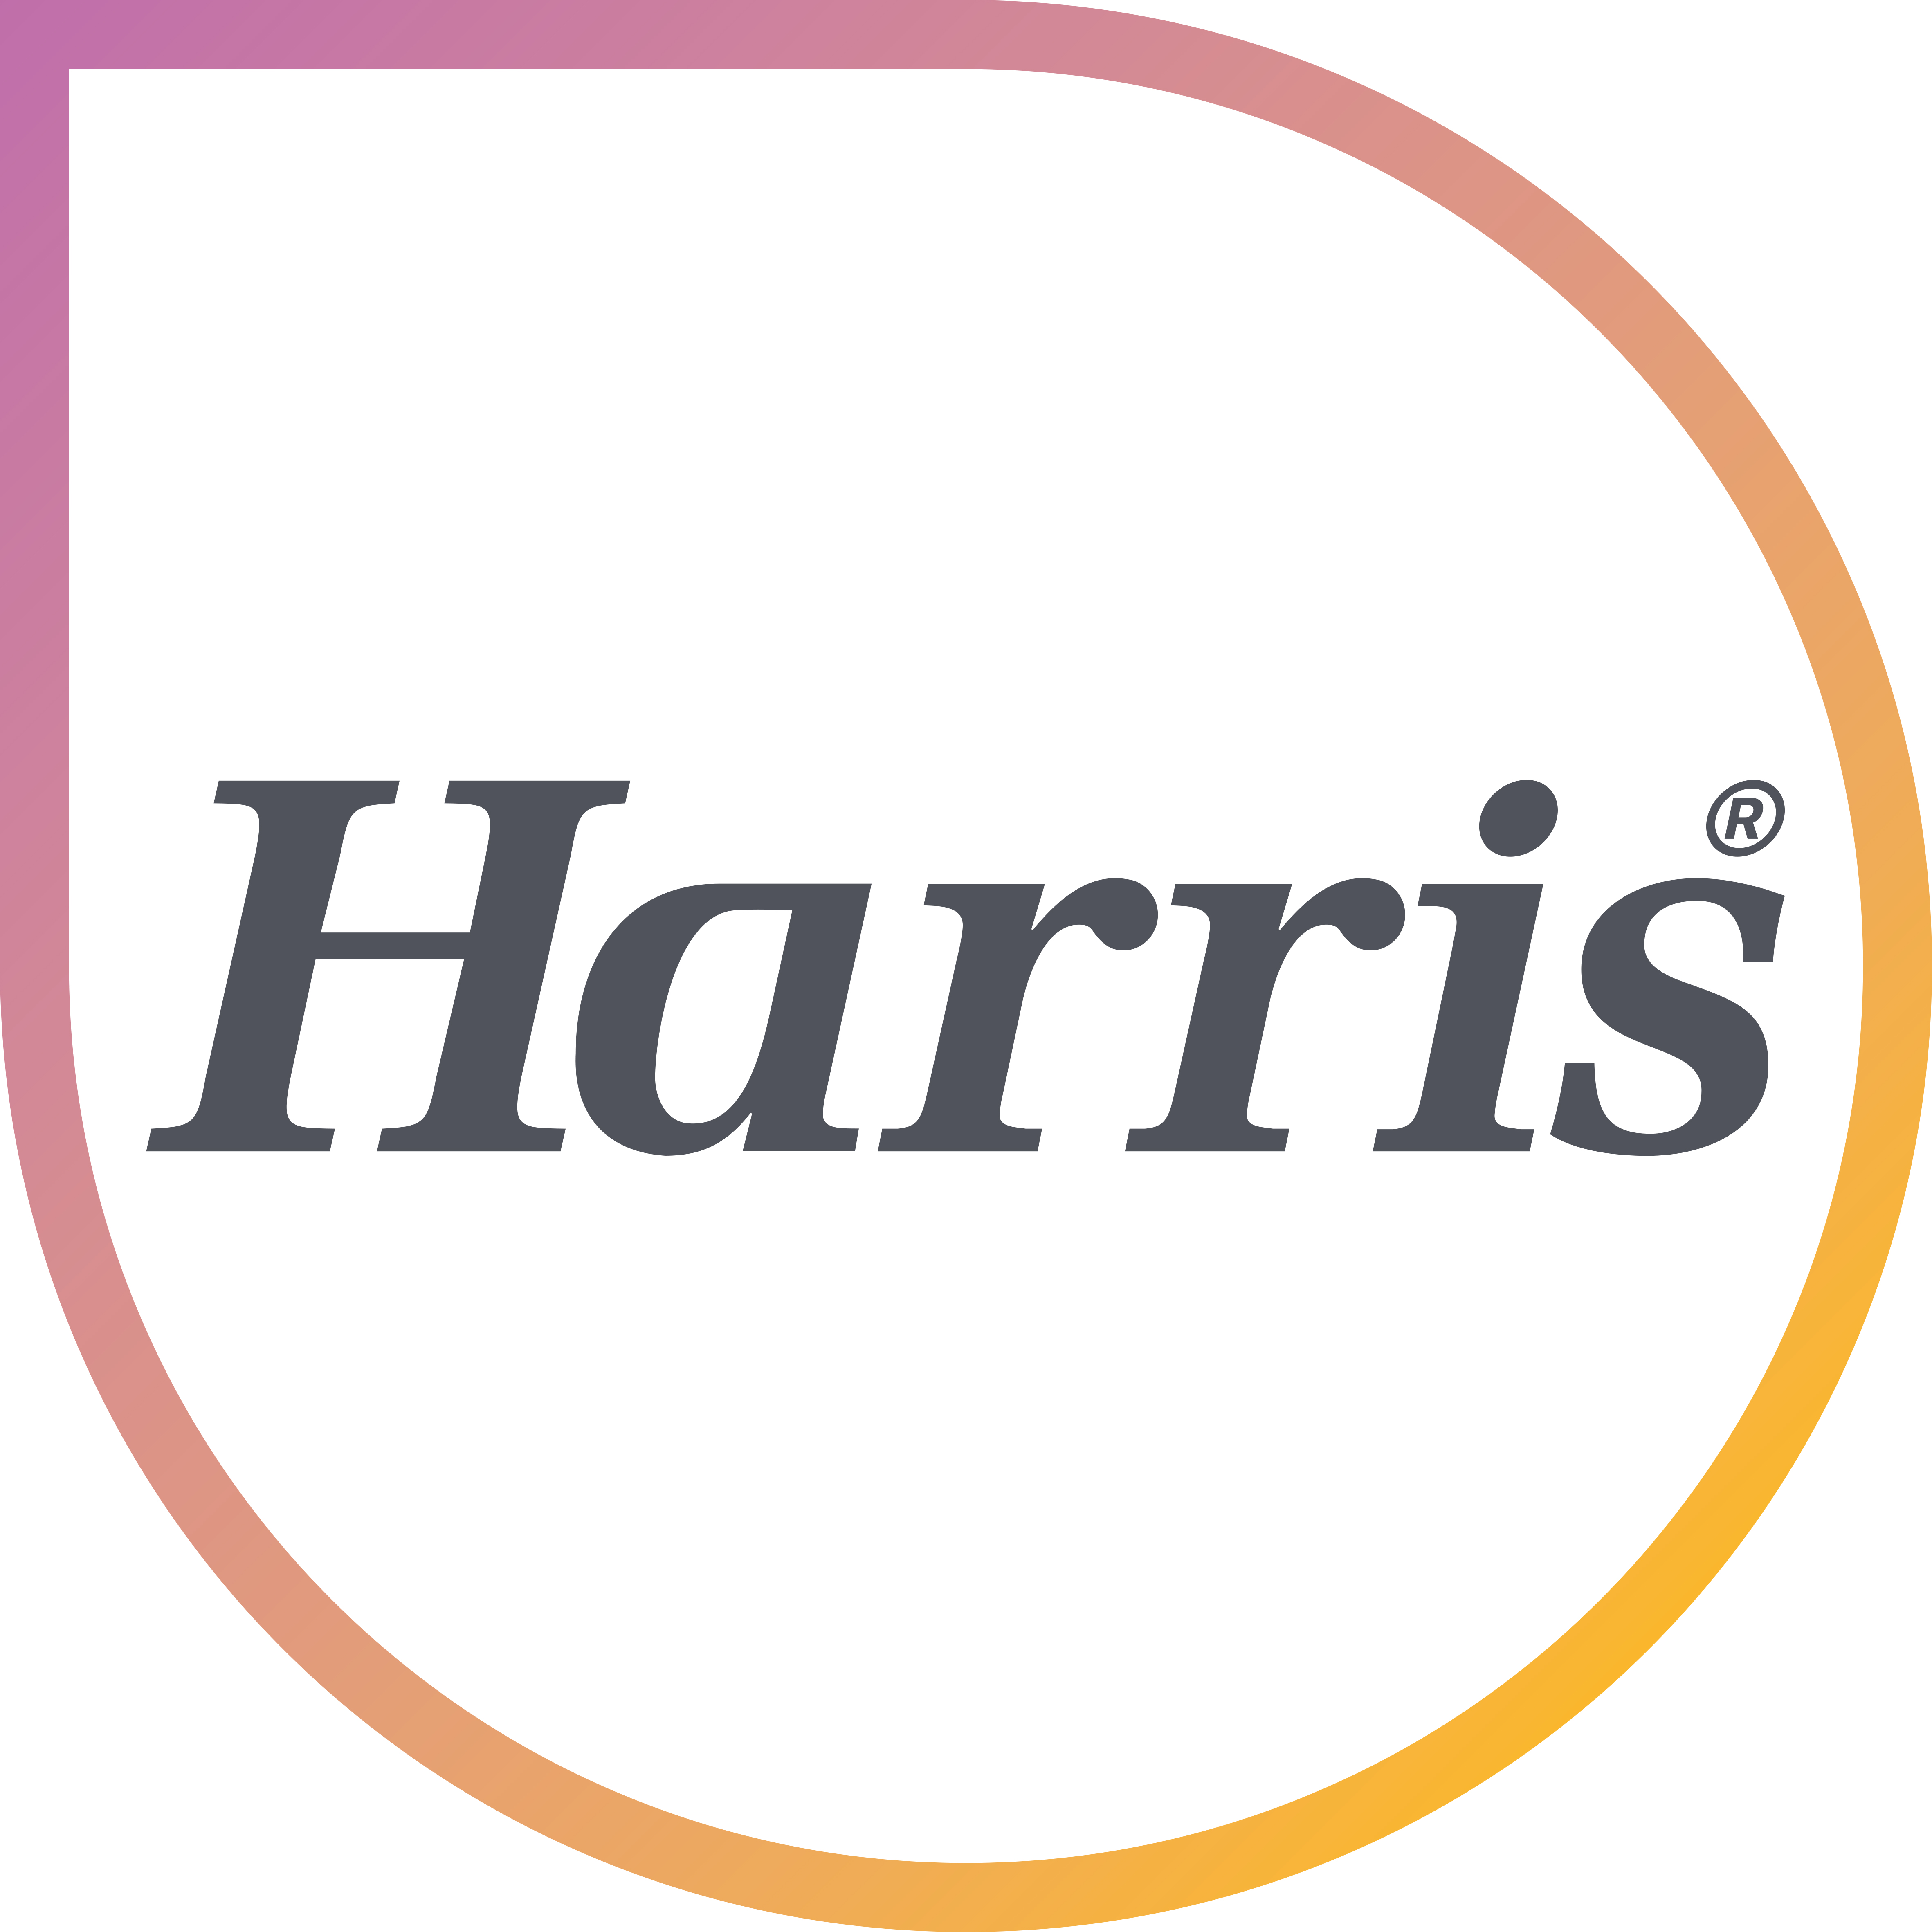 L G Harris & Co Ltd